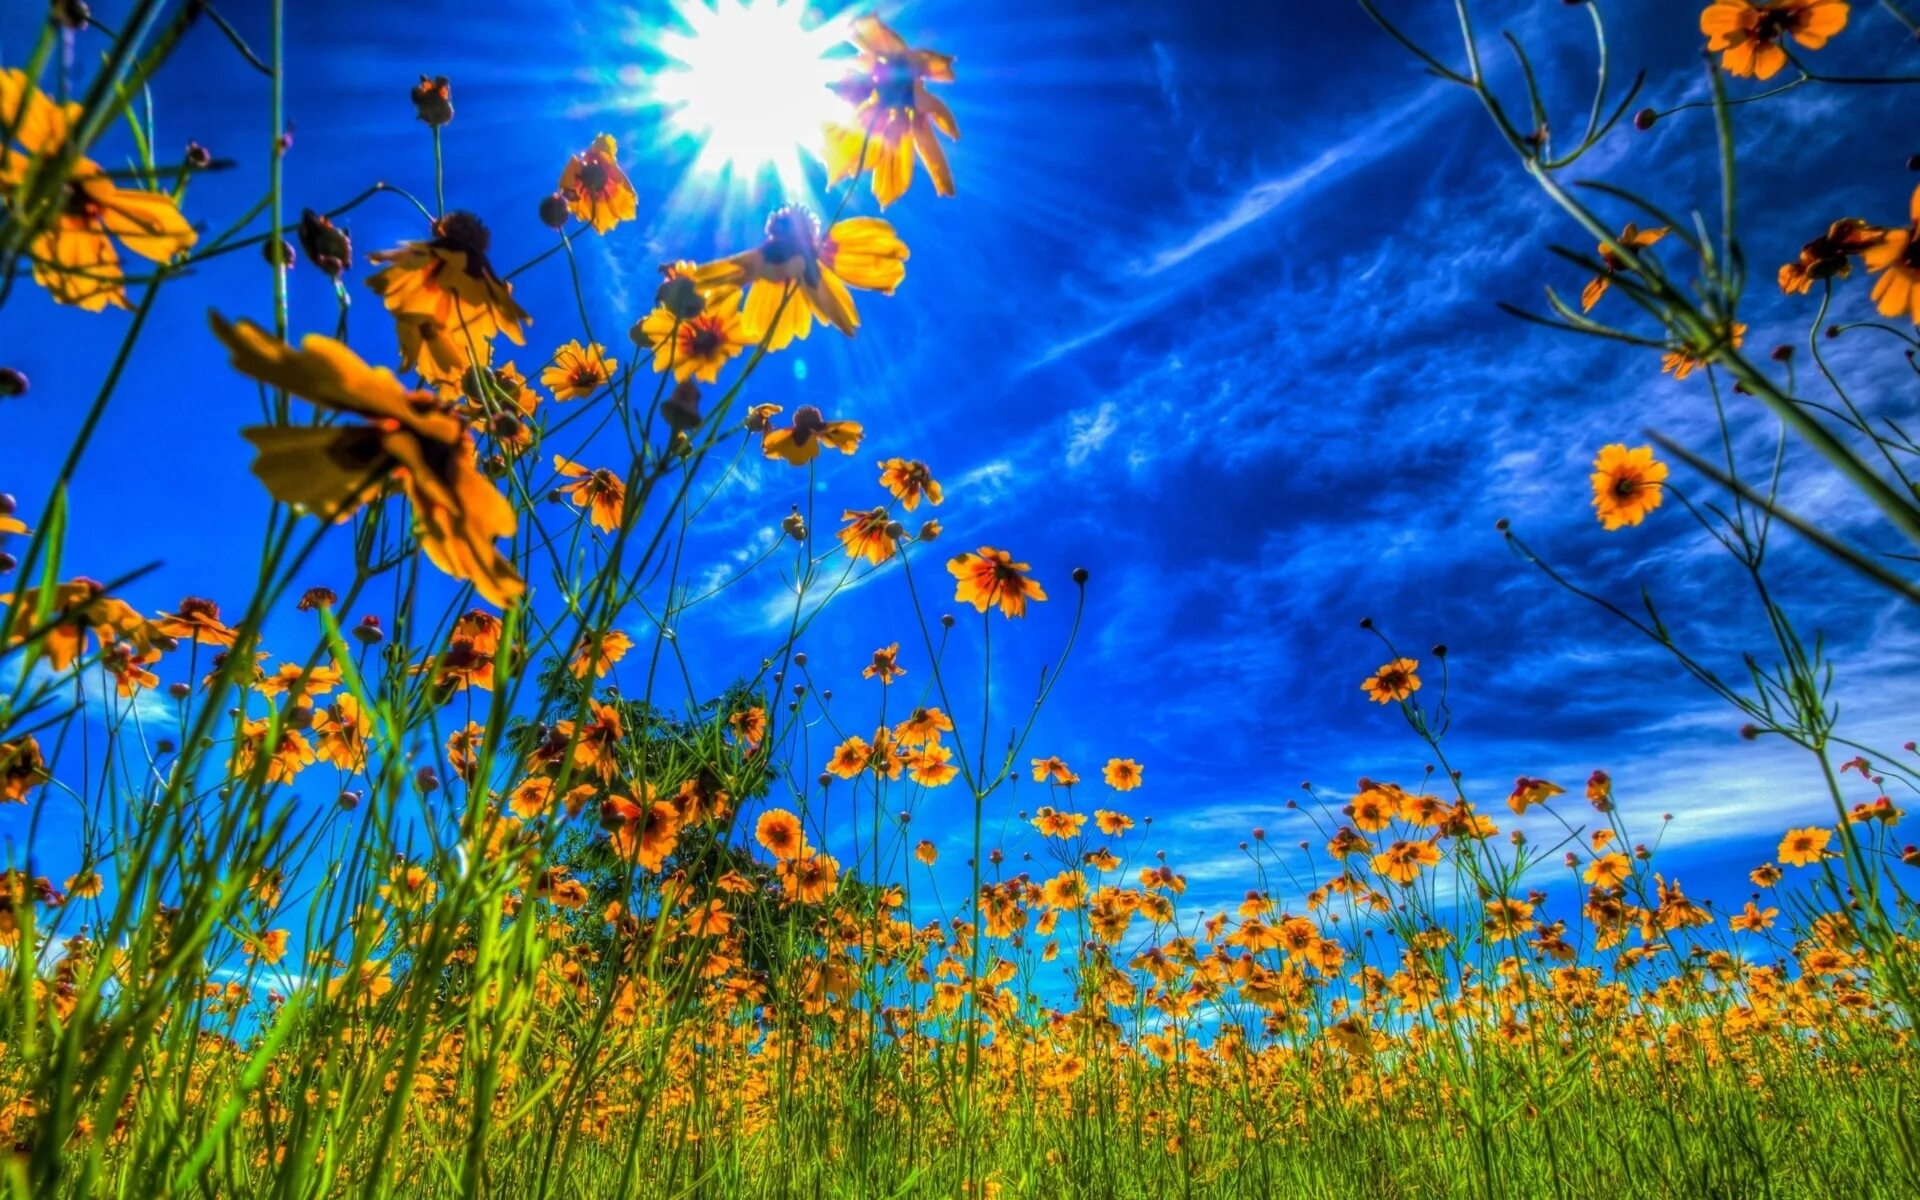 Яркая природа. Лето солнце. Цветы и солнце. Солнечное лето. Время года лето солнечное